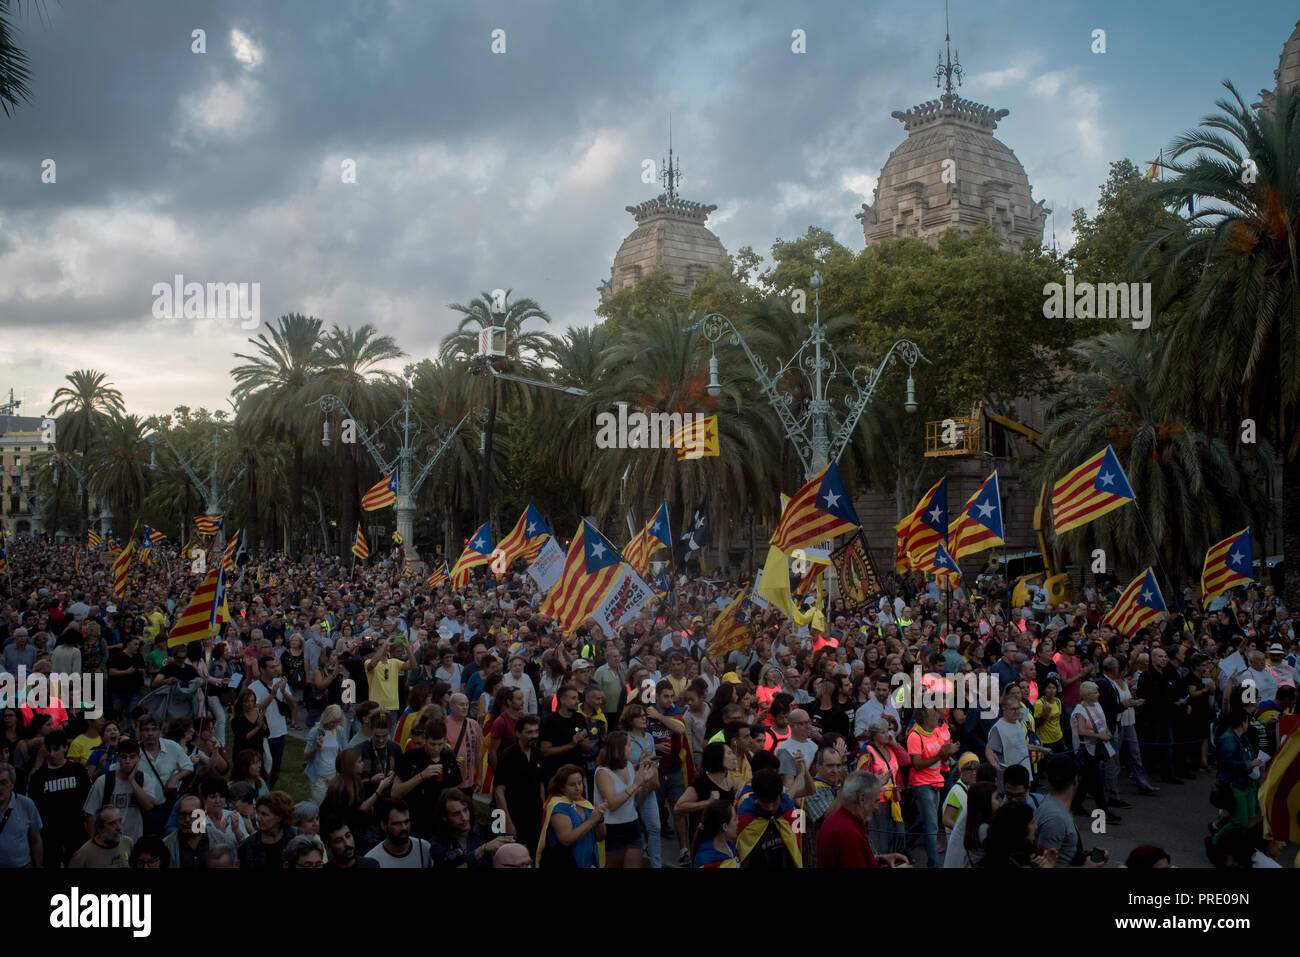 Octubre 01, 2018 - Barcelona, Cataluña, España - Miles de personas marcharon en Barcelona el 1 de octubre de 2018 recordando el referéndum sobre la independencia celebrado hace un año y que llevó a cientos de heridos, los electores españoles debido a la represión policial. Foto de stock